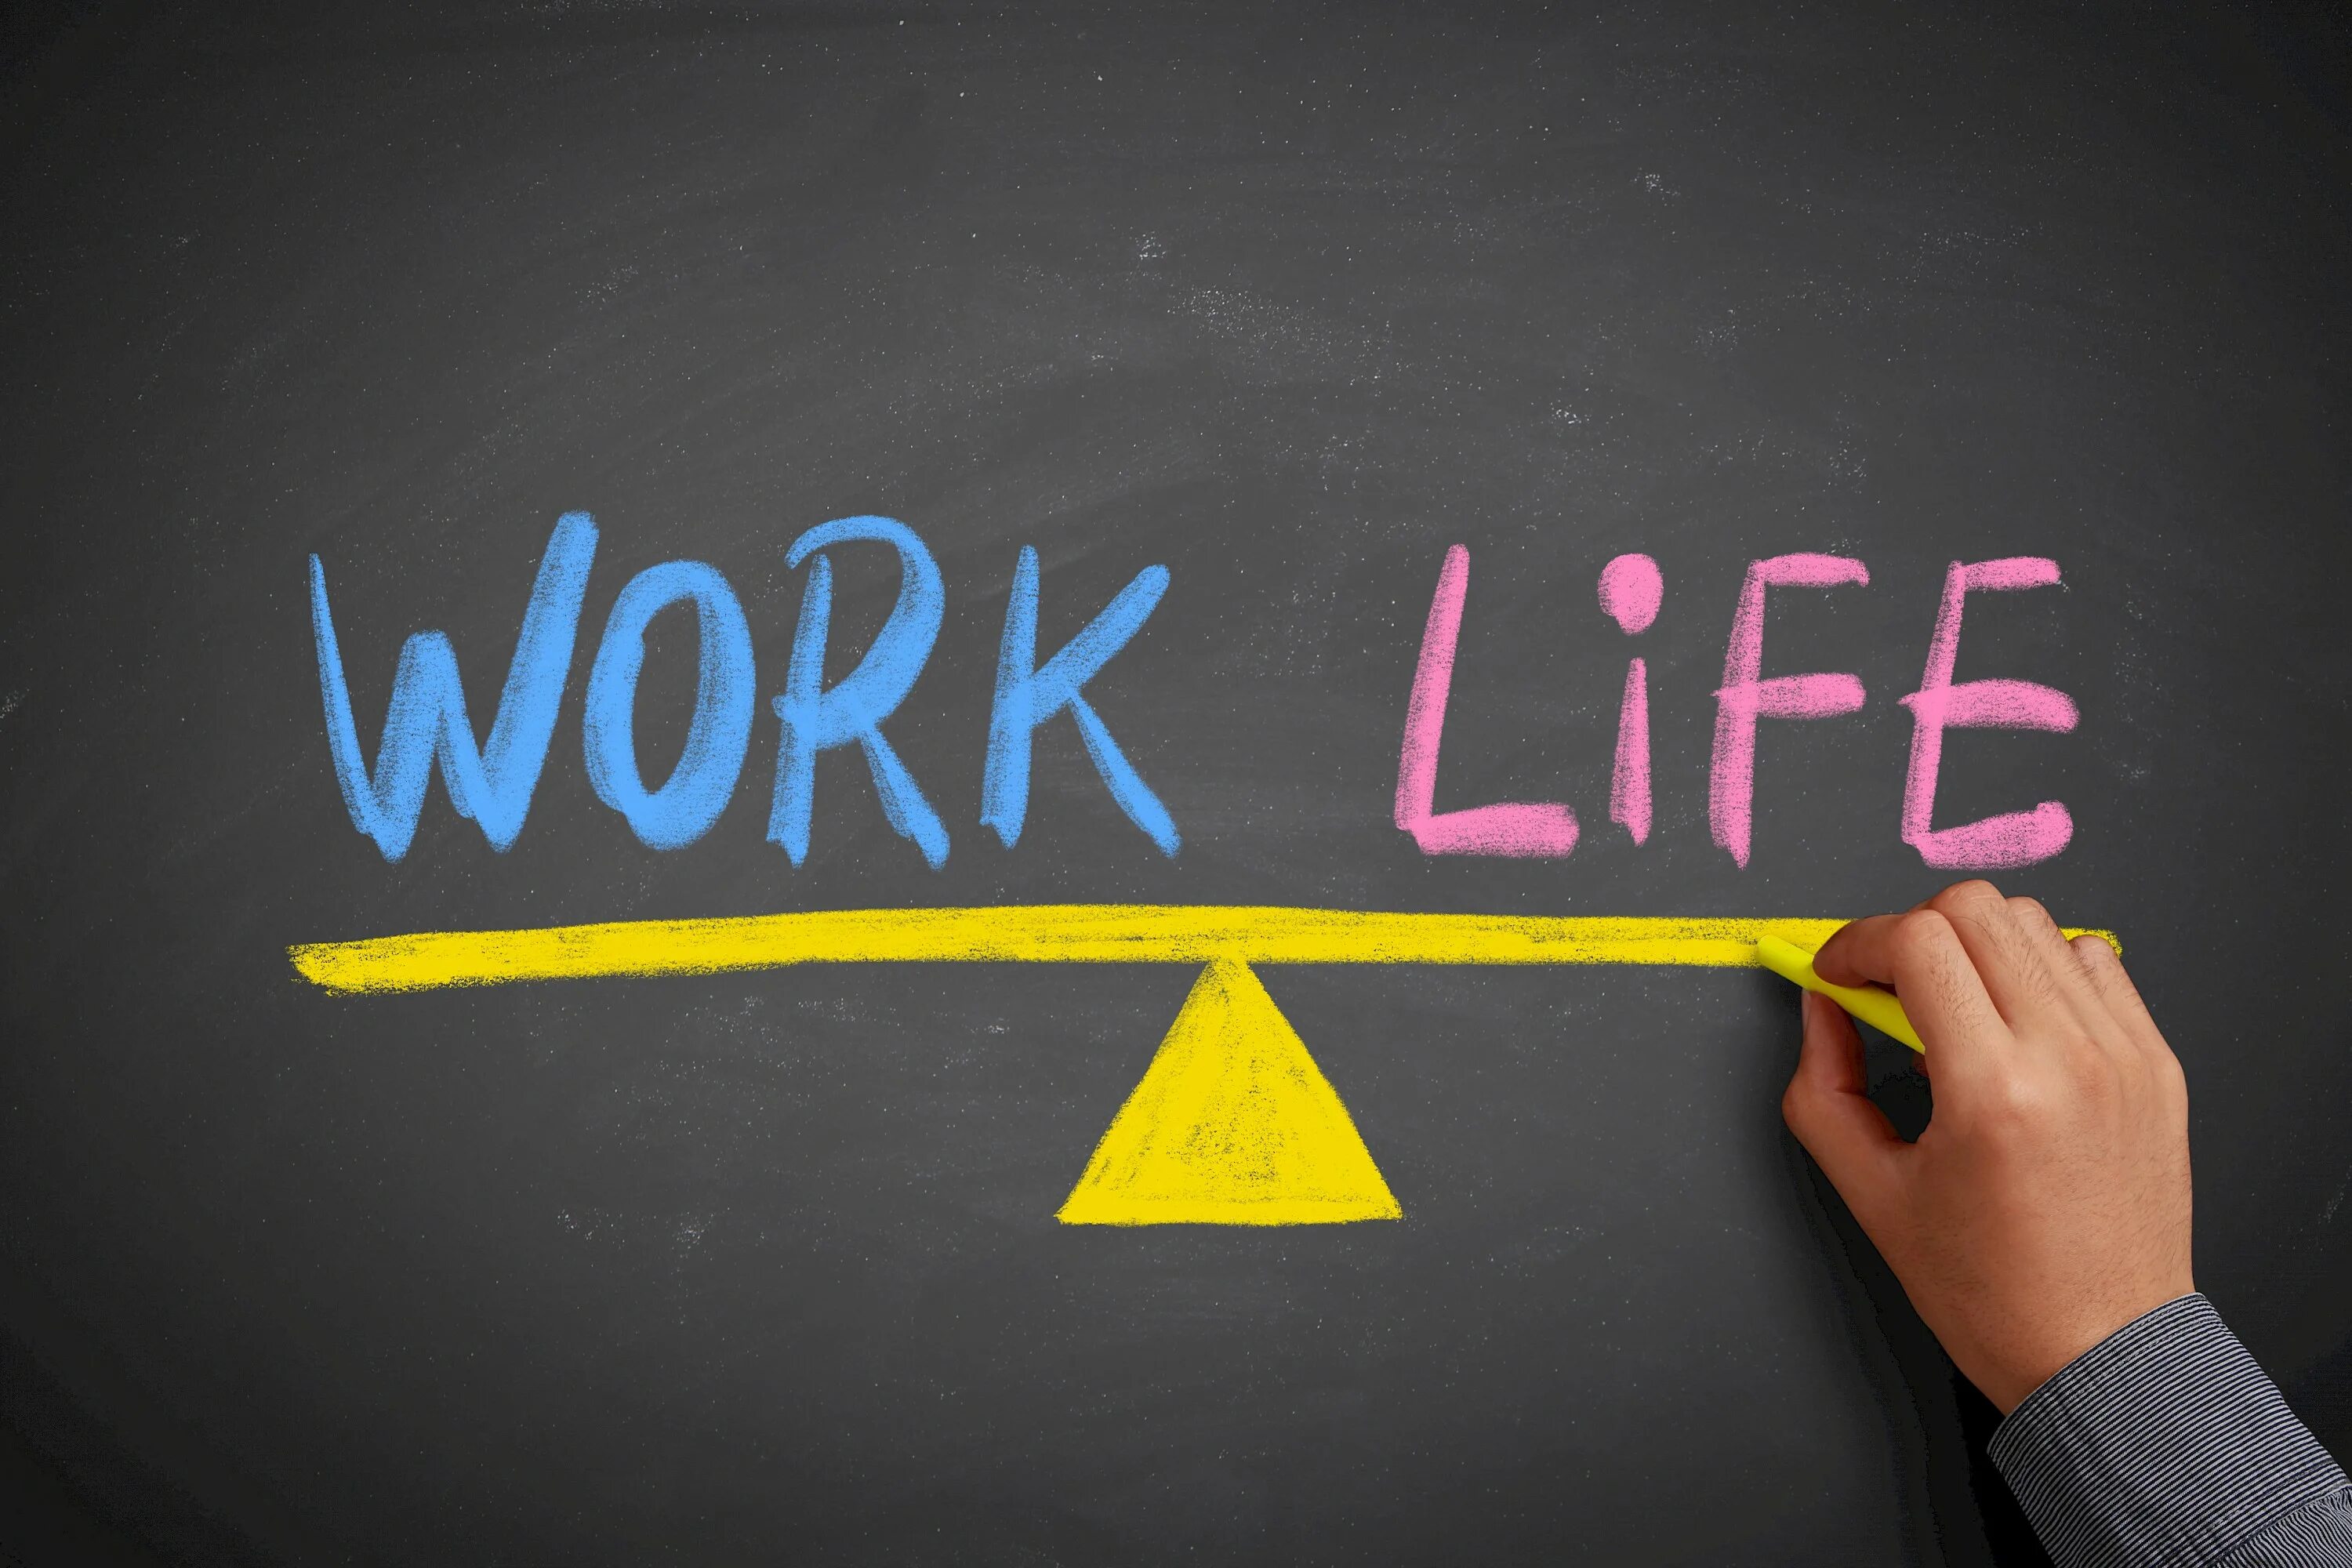 We would better start. Work-Life Balance. Баланс между работой и личной жизнью. Баланс между жизнью и учебой. Баланс работа жизнь.